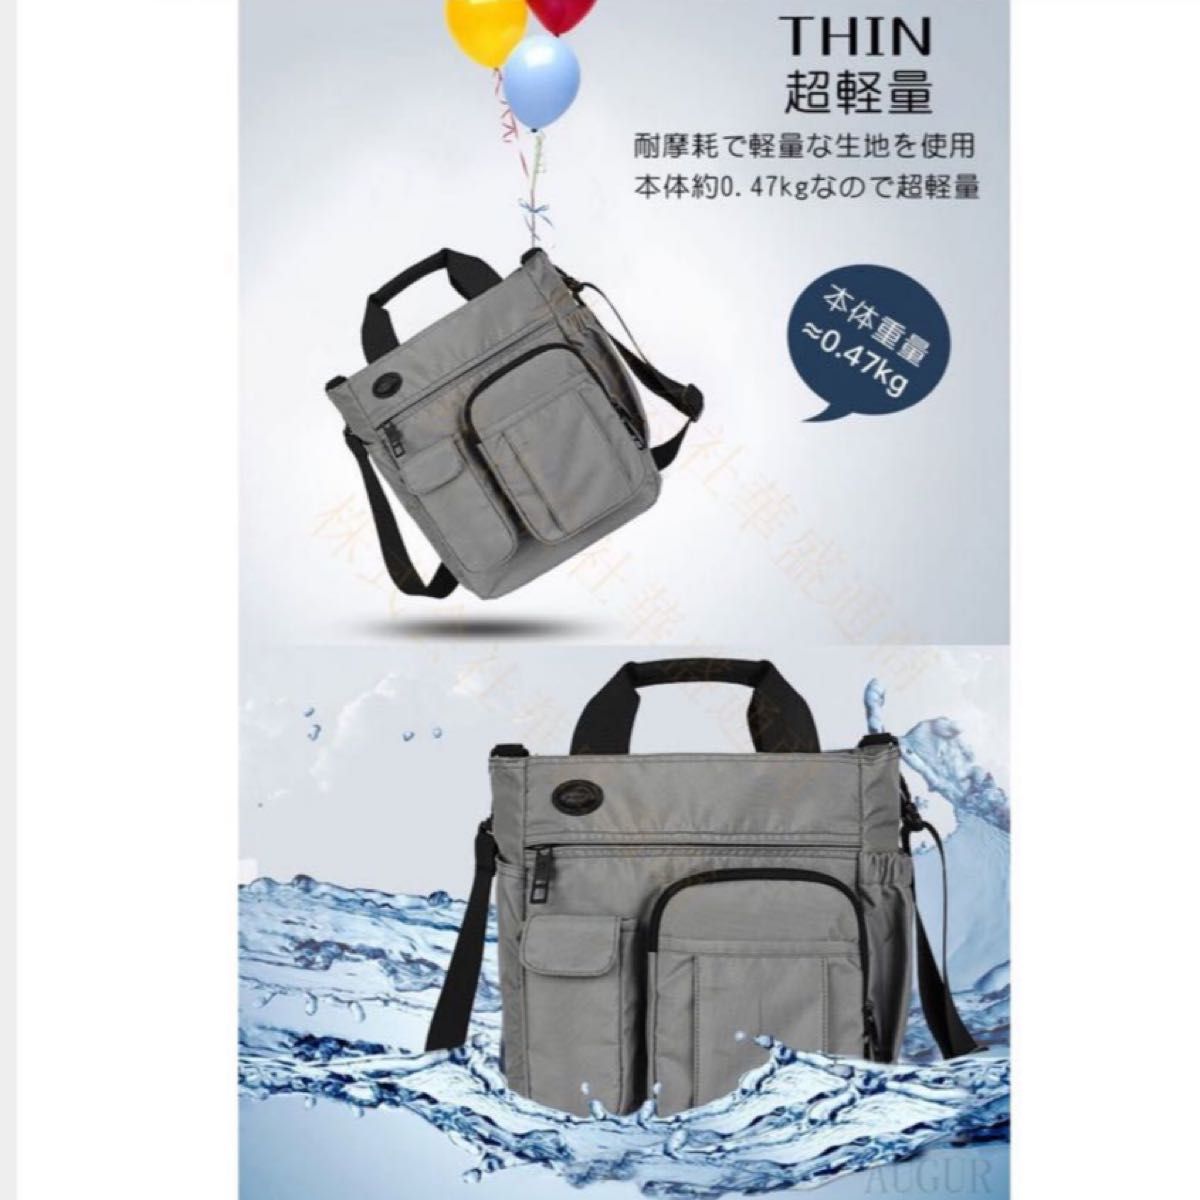 【新品未使用】ショルダーバッグ多機能 軽量 撥水 斜めがけ ビジネスバッグ